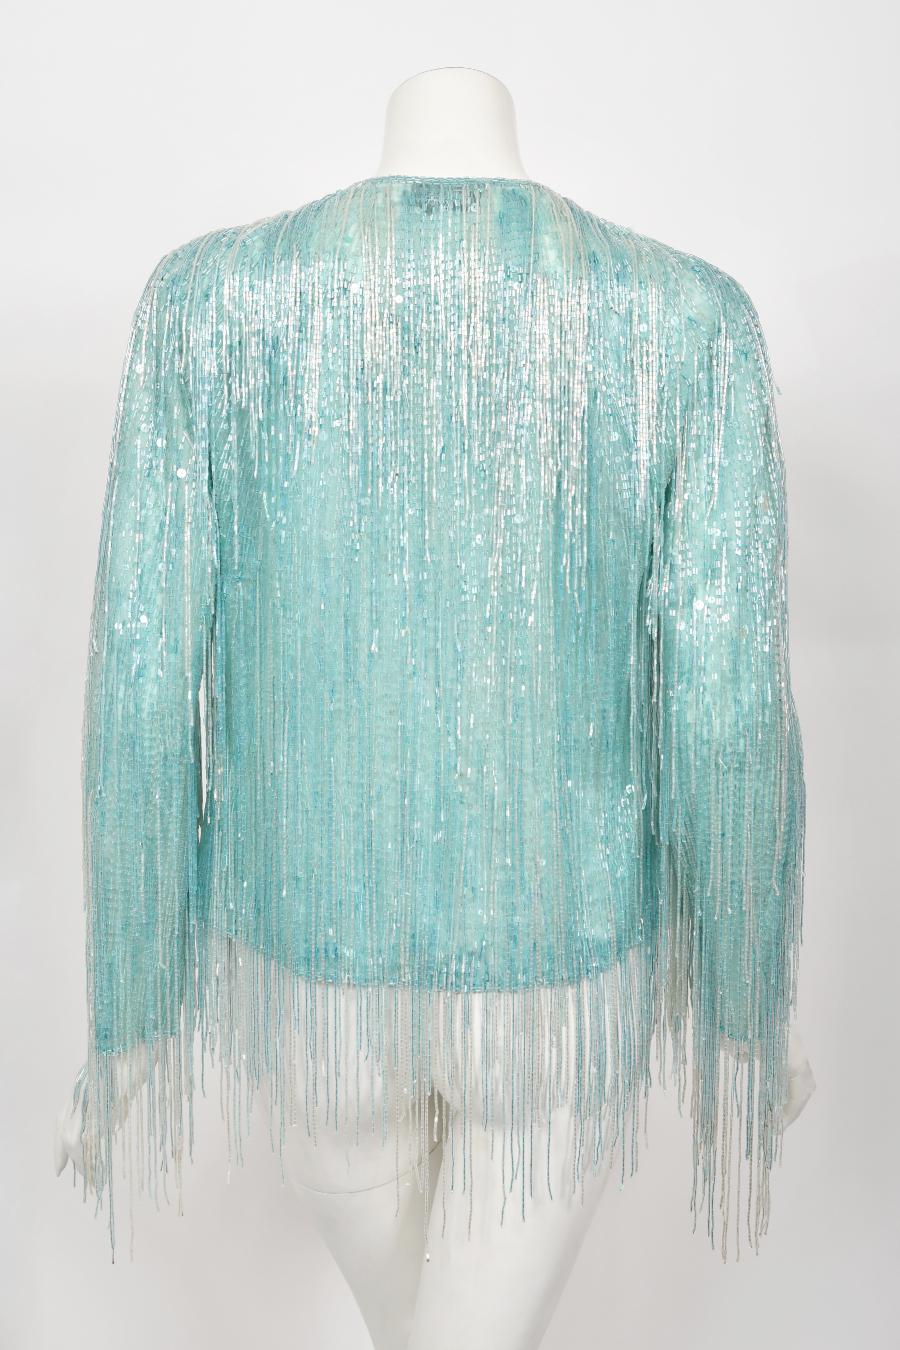 Halston Couture - Cardigan disco vintage à franges en soie perlée bleu glace, années 1970 8